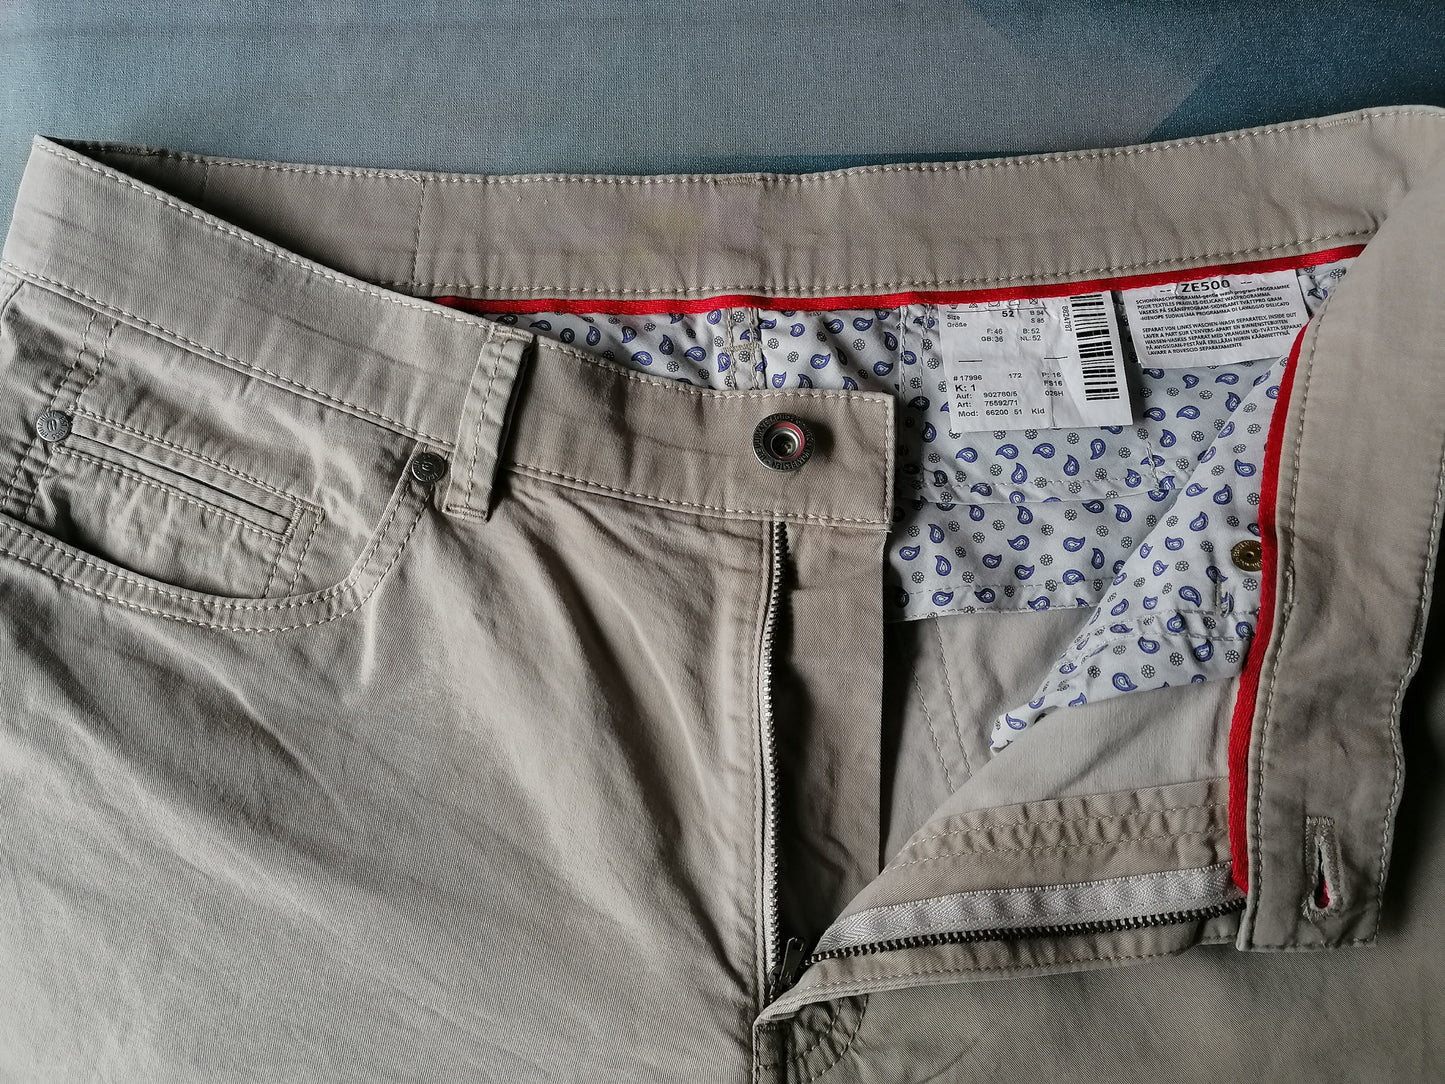 HILTL Pantalon. Beige colored. Type ZE500. Size 52 / L